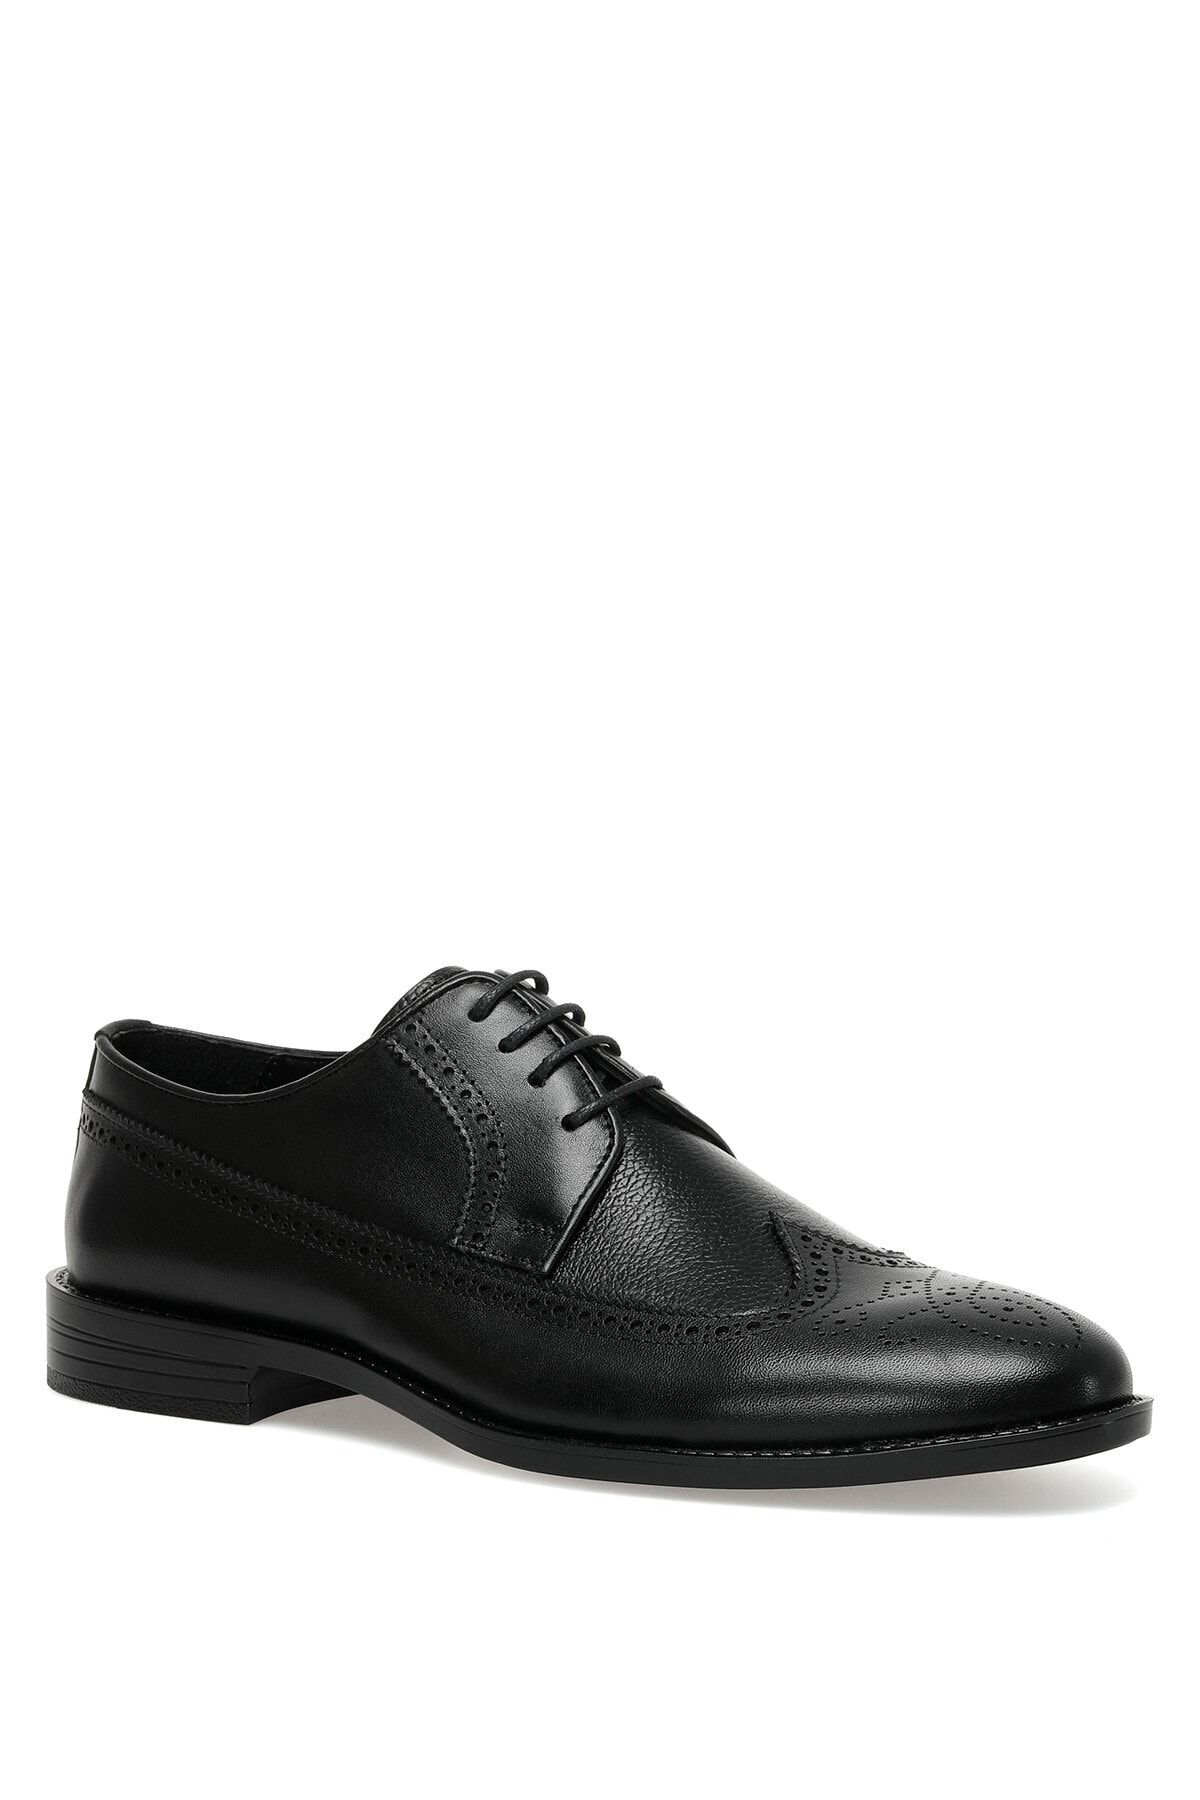 İnci Acel 3fx Siyah Erkek Klasik Ayakkabı